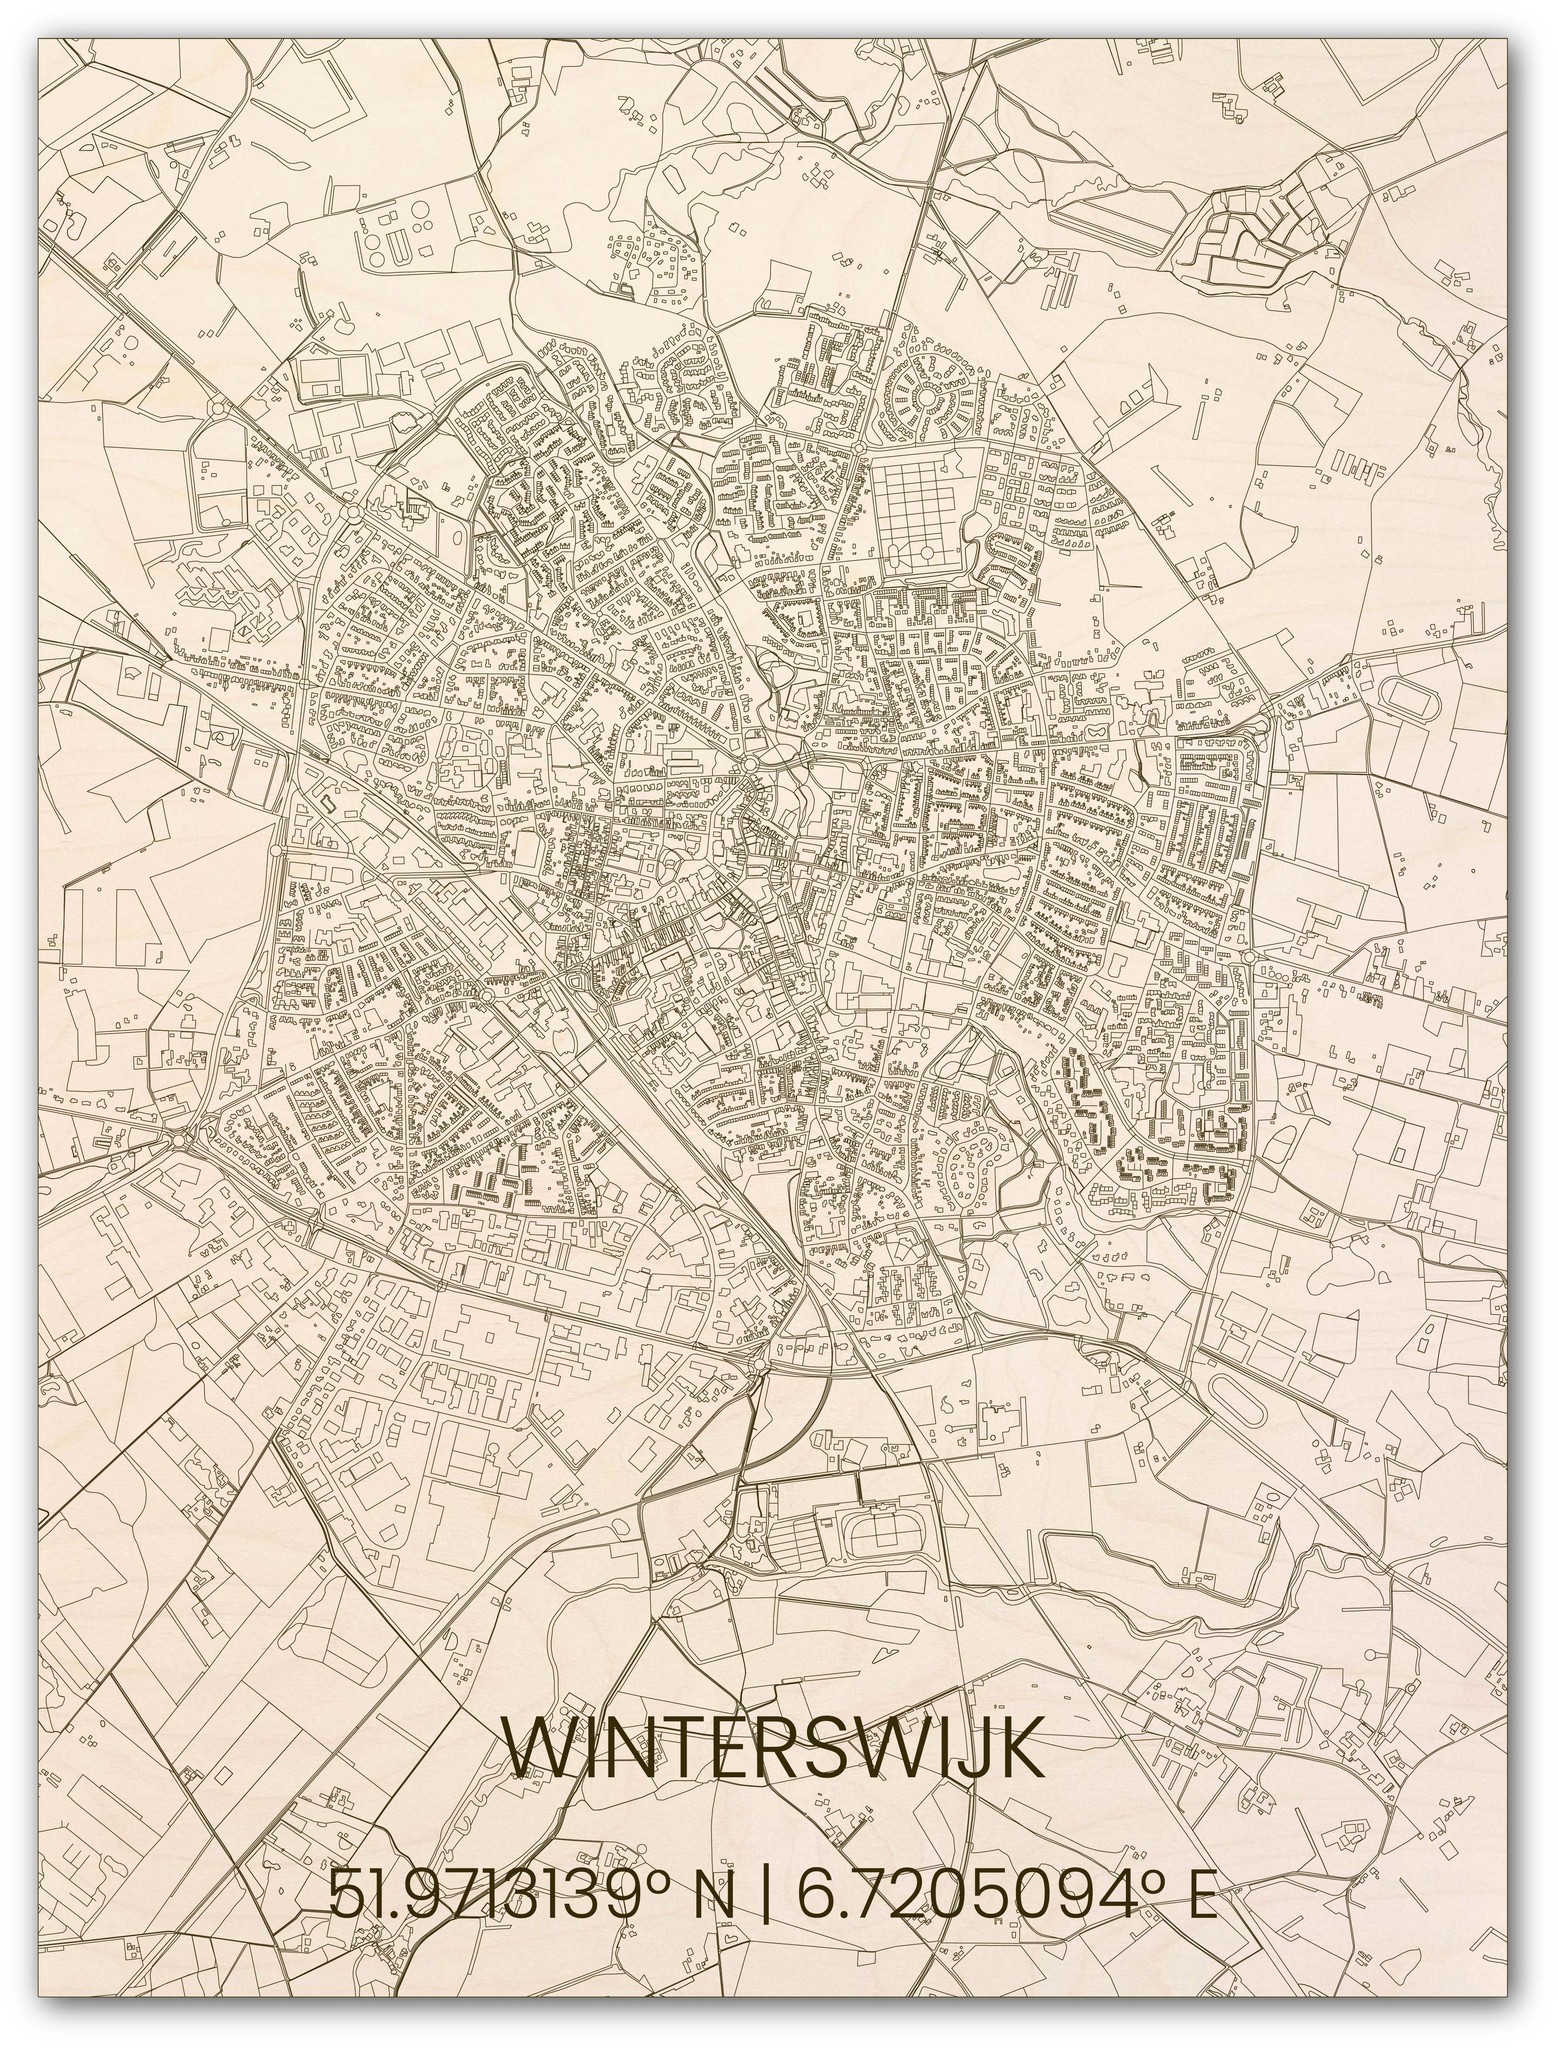 Houten stadsplattegrond Winterswijk-1